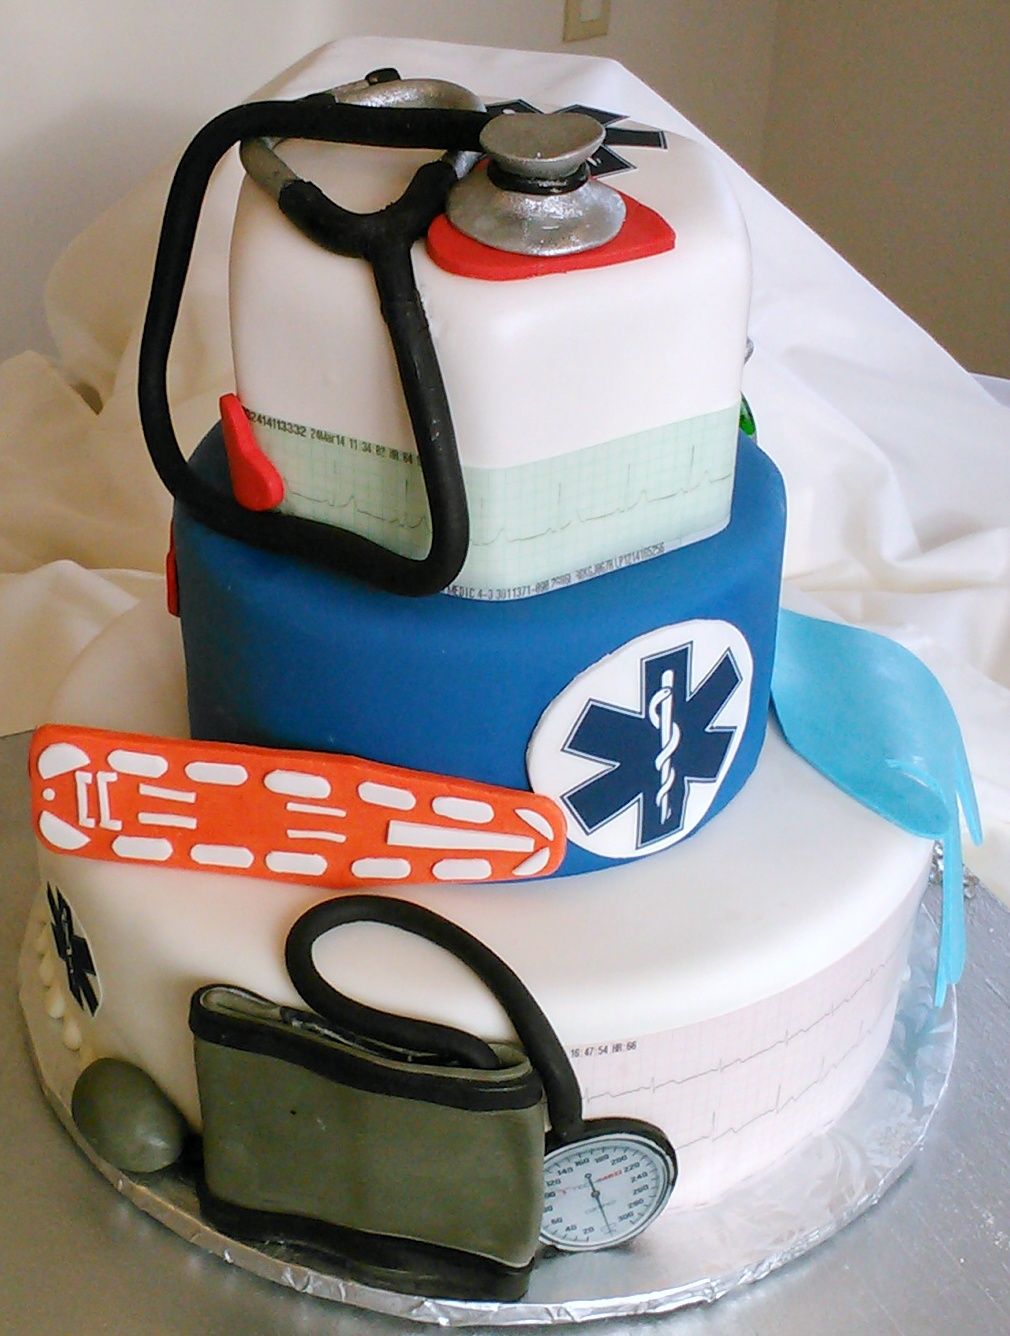 С днем рождения фельдшеру. Торт для медработника. Торт для медика скорой помощи. Торт для фельдшера. Торт на день скорой помощи.